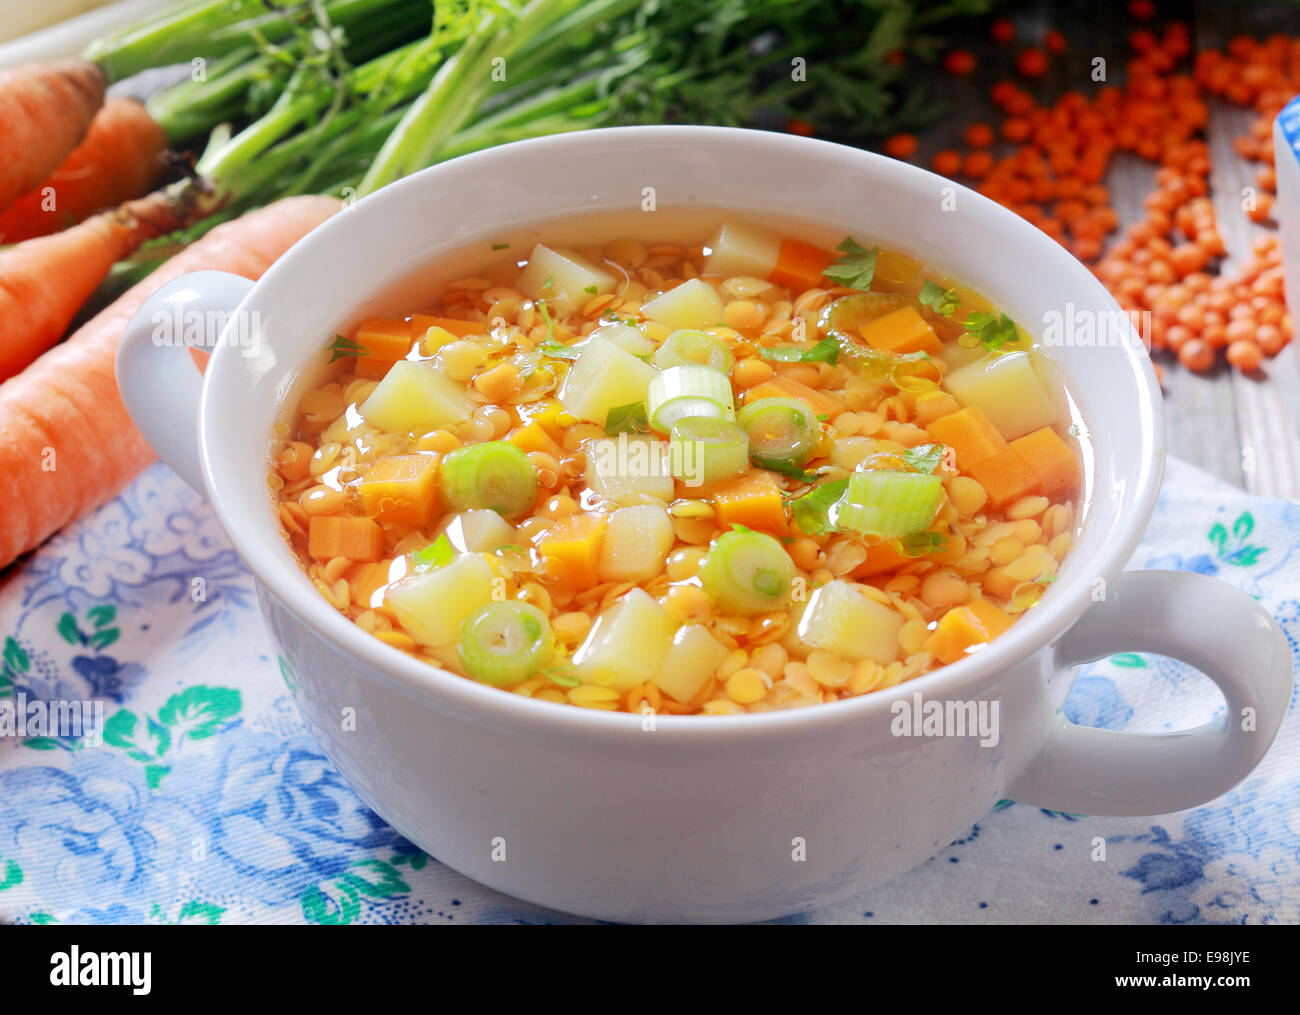 Soupe de légumes avec des carottes, poireaux et lentilles pour un apéritif riche en protéines , close up high angle view avec des ingrédients Banque D'Images